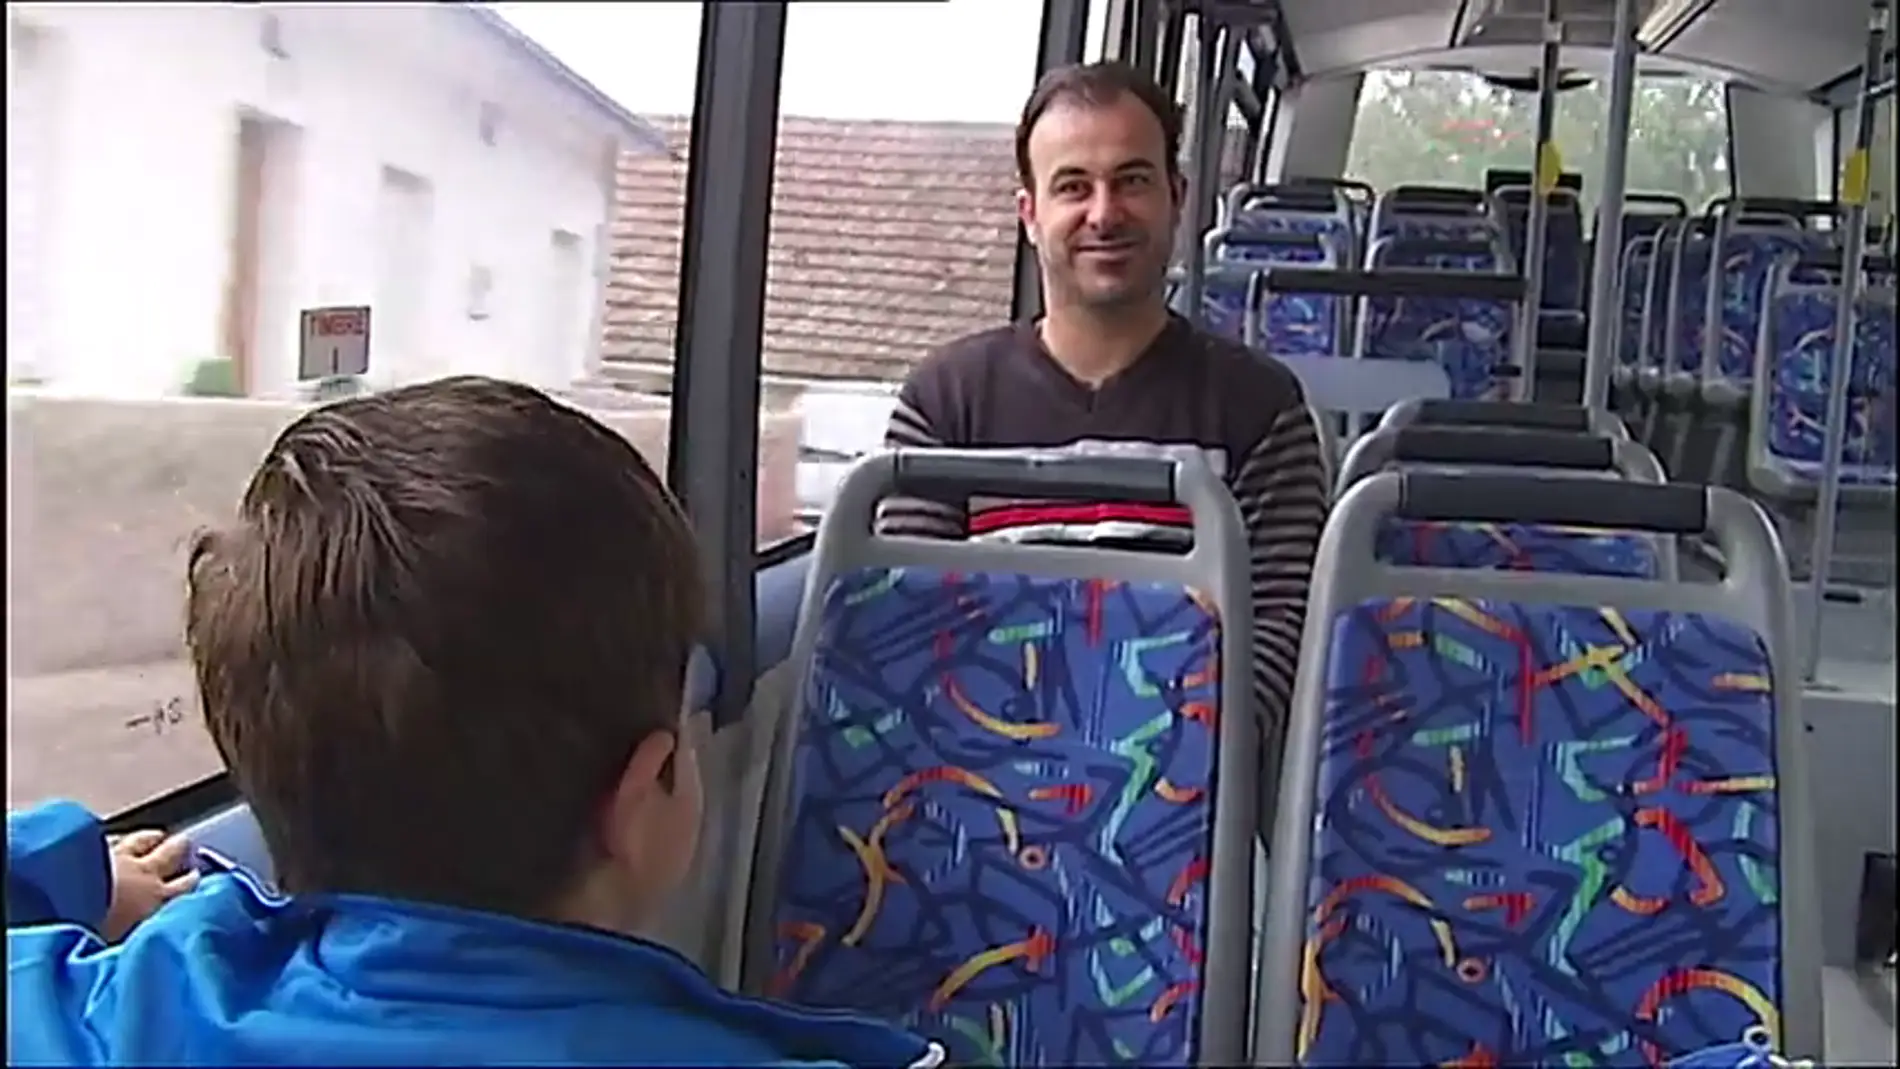 El uso del autobús urbano crece en todas las comunidades salvo en Galicia